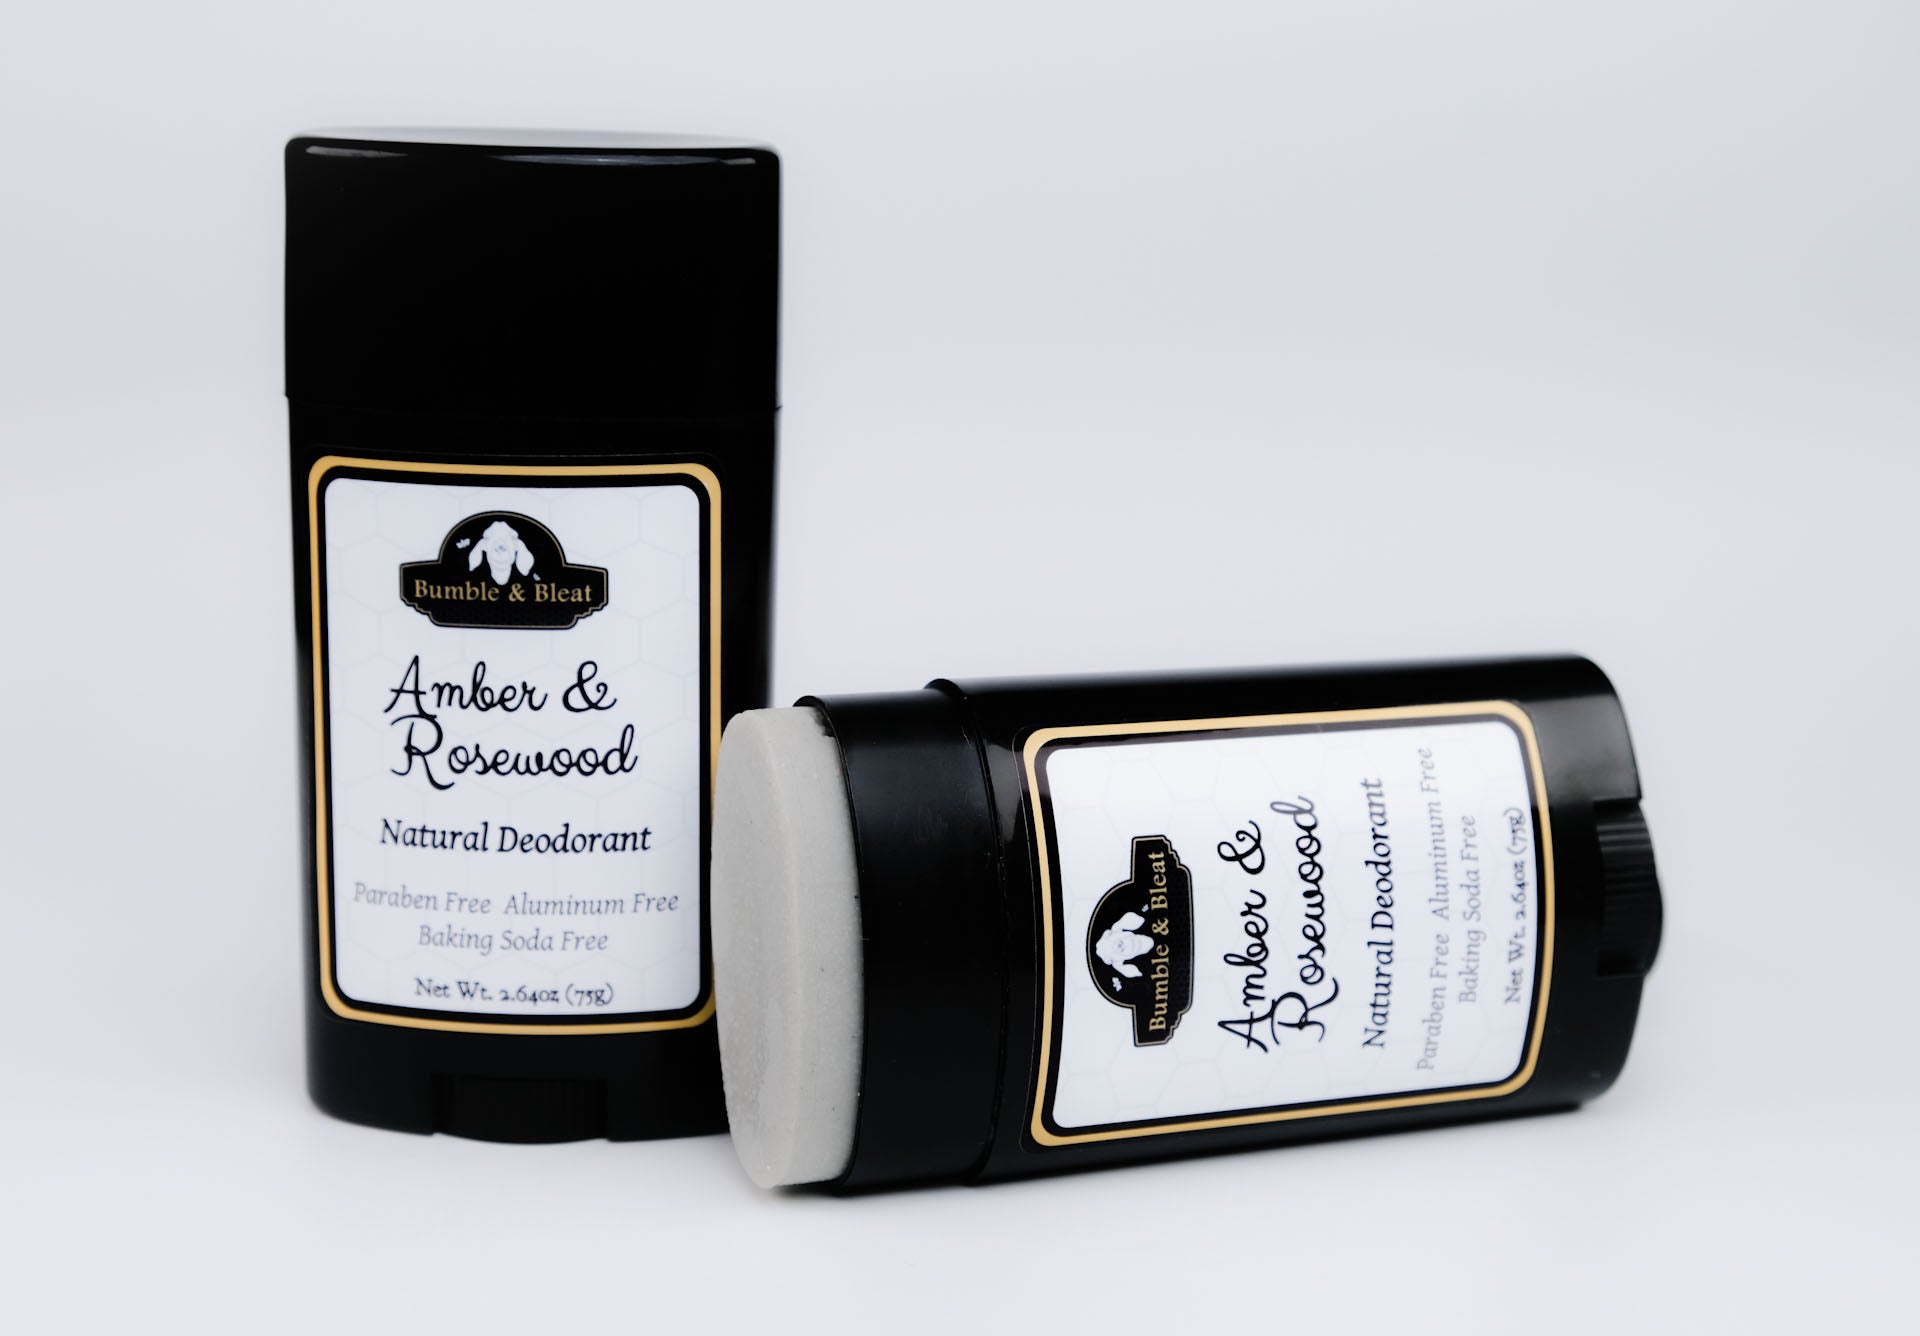 Amber & Rosewood Natural Deodorant